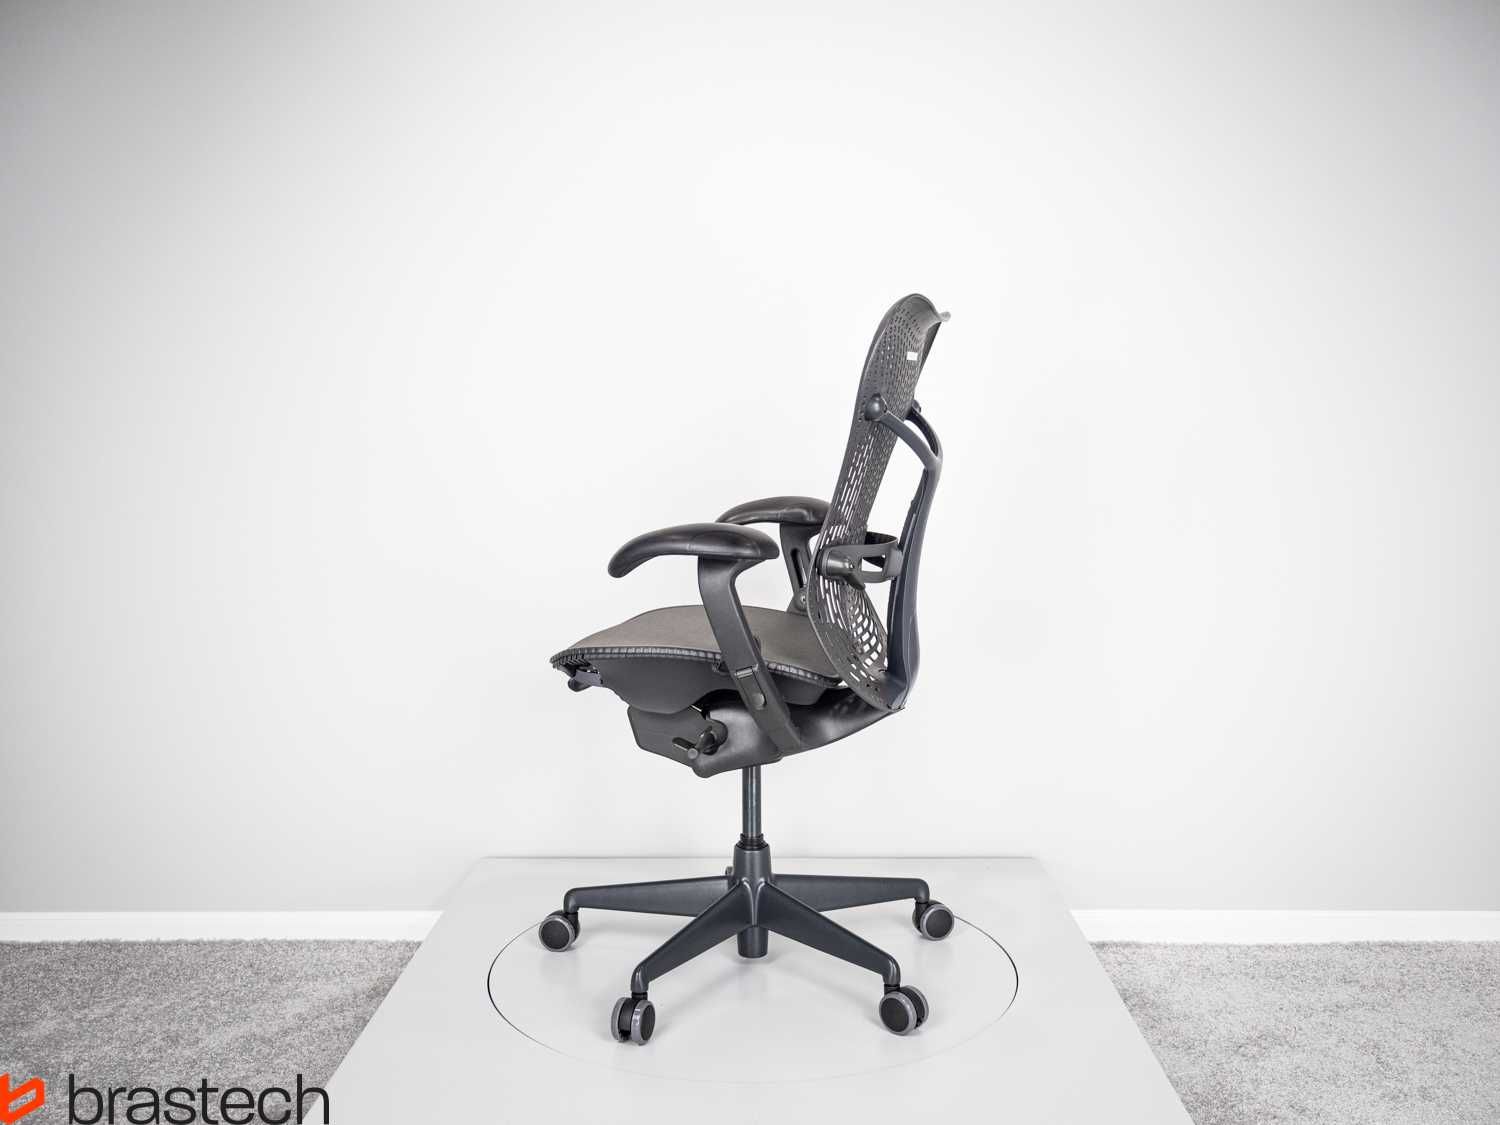 Krzesło biurowe obrotowe Herman Miller Mirra fabrycznie nowe siedzisko